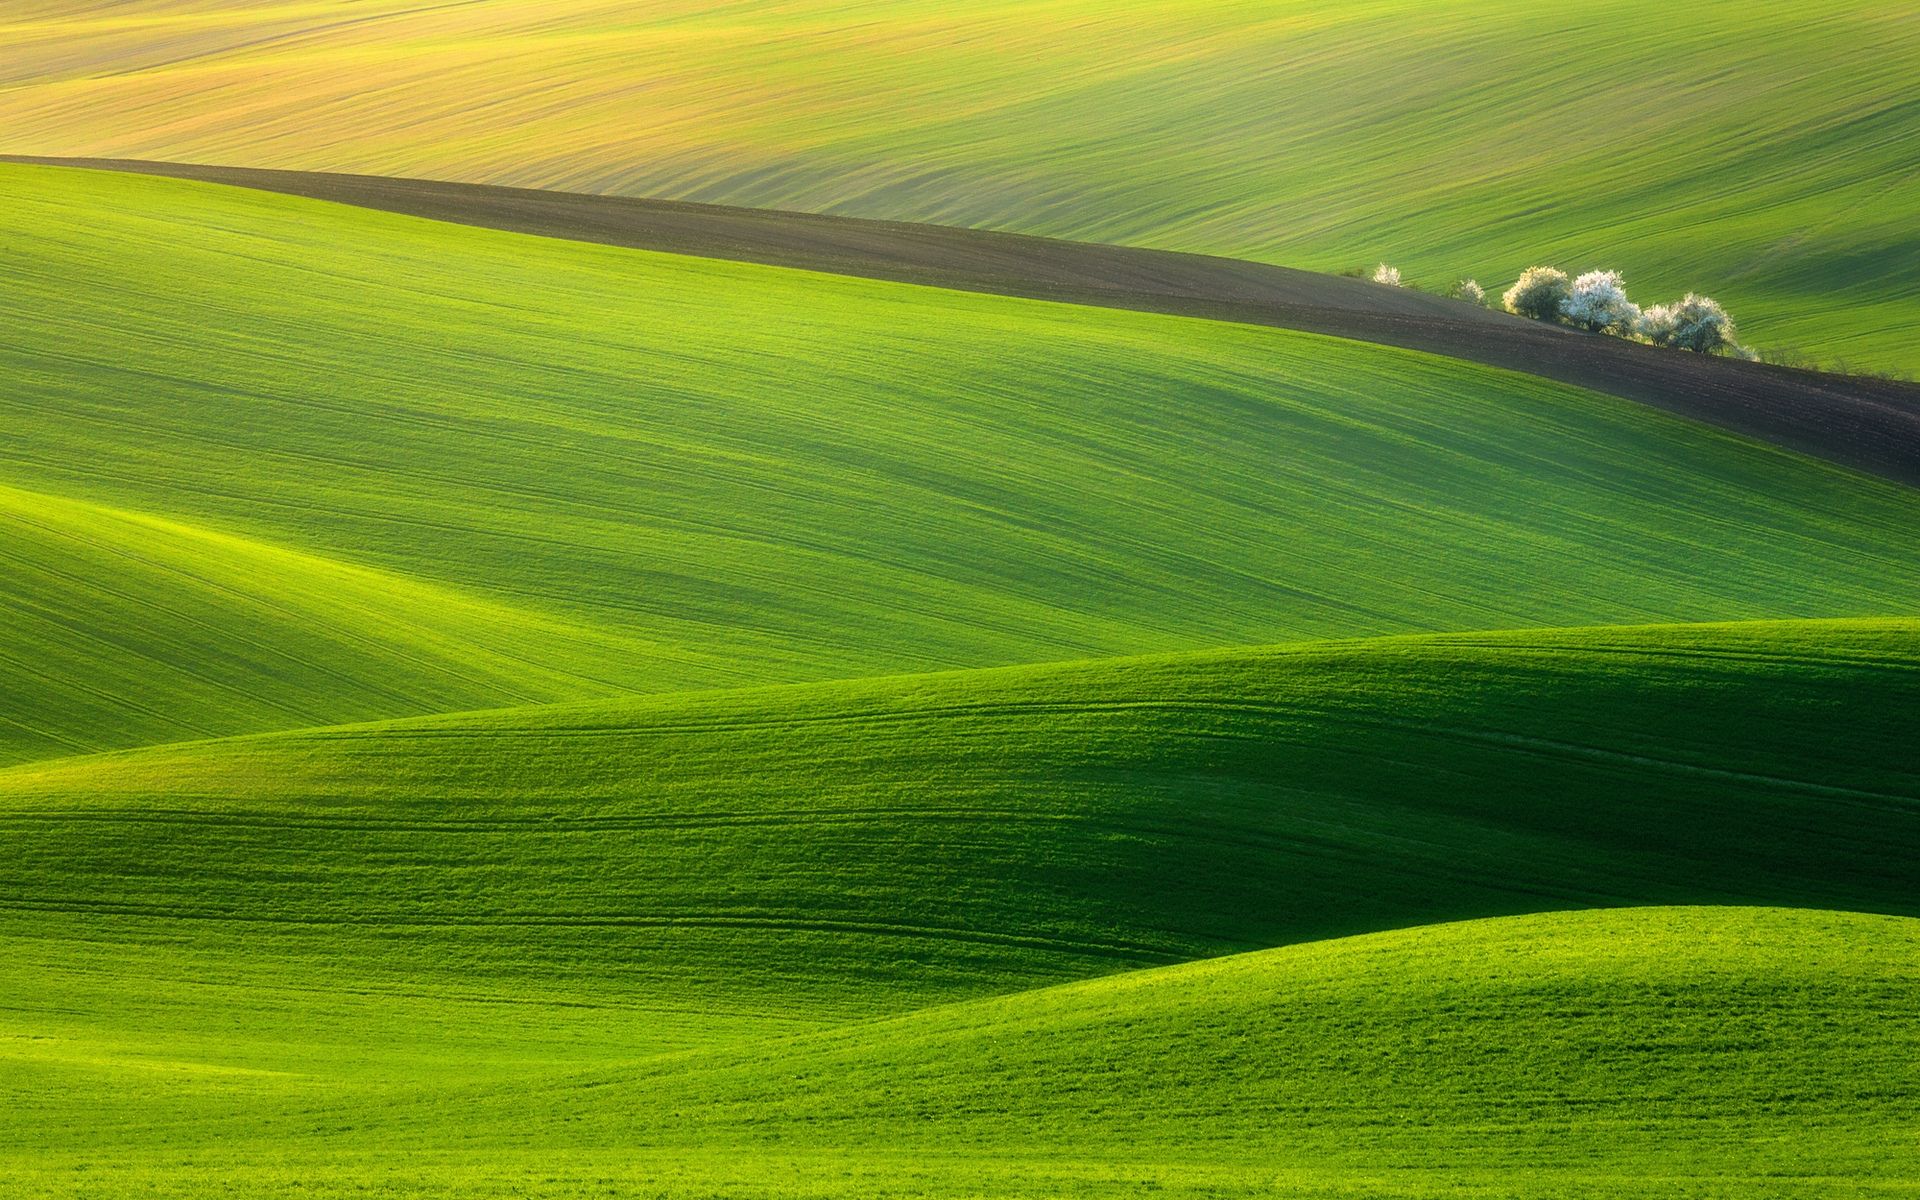 Spectacular Green Field wallpaper | Amazing Photos | Pinterest ...